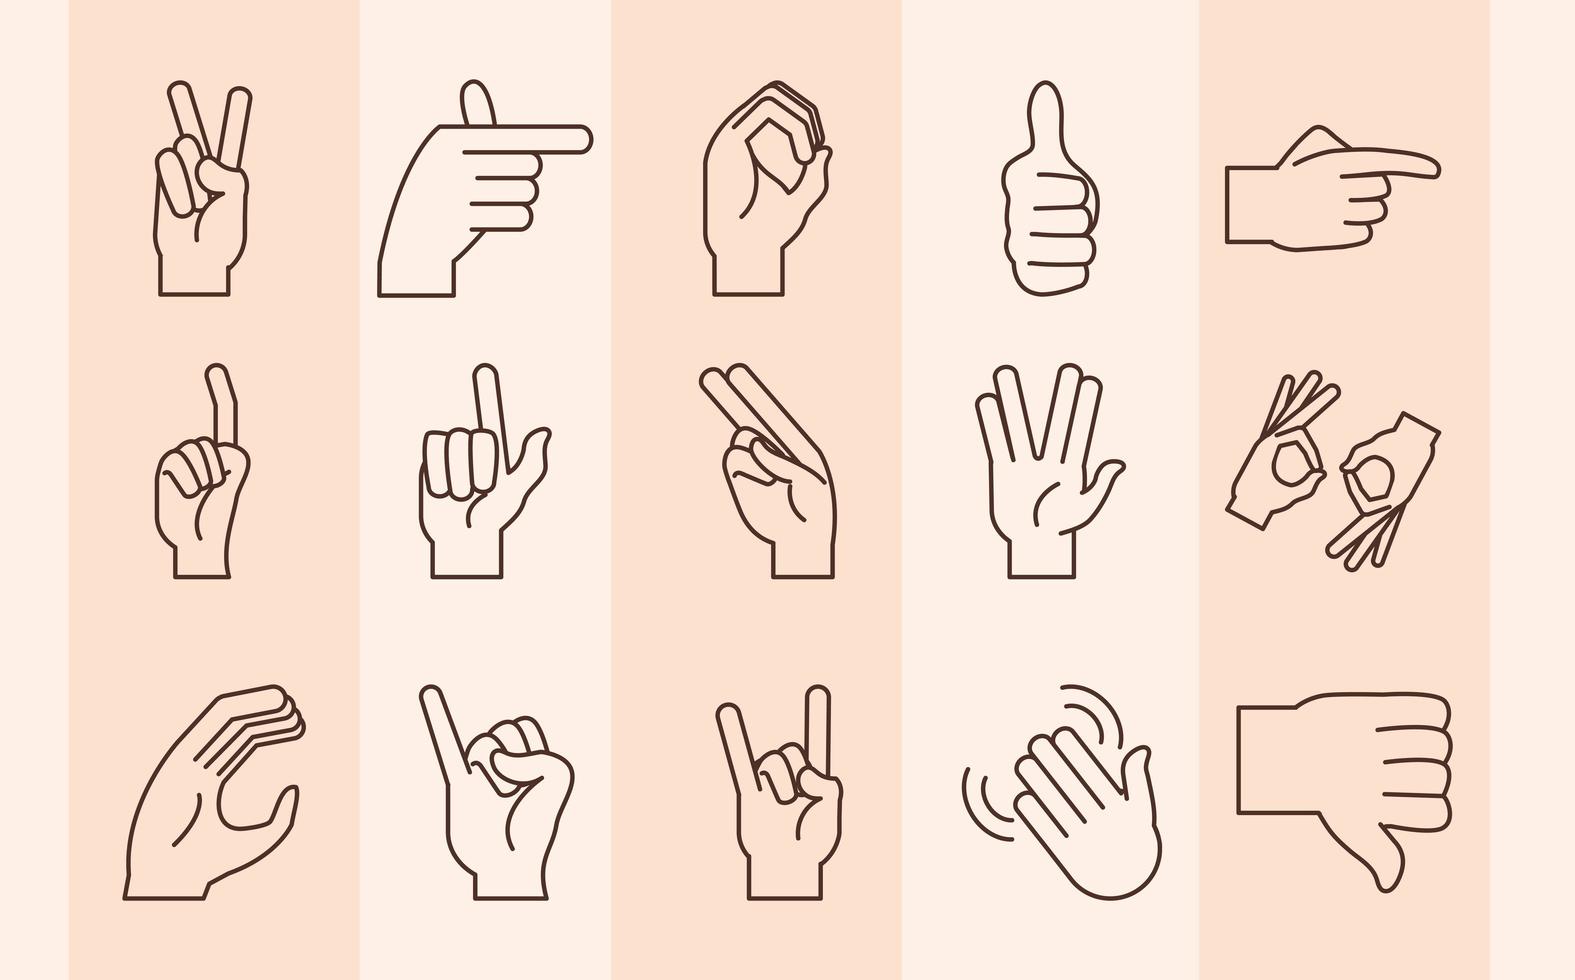 linguagem de sinais e coleção de ícones de gestos com as mãos vetor